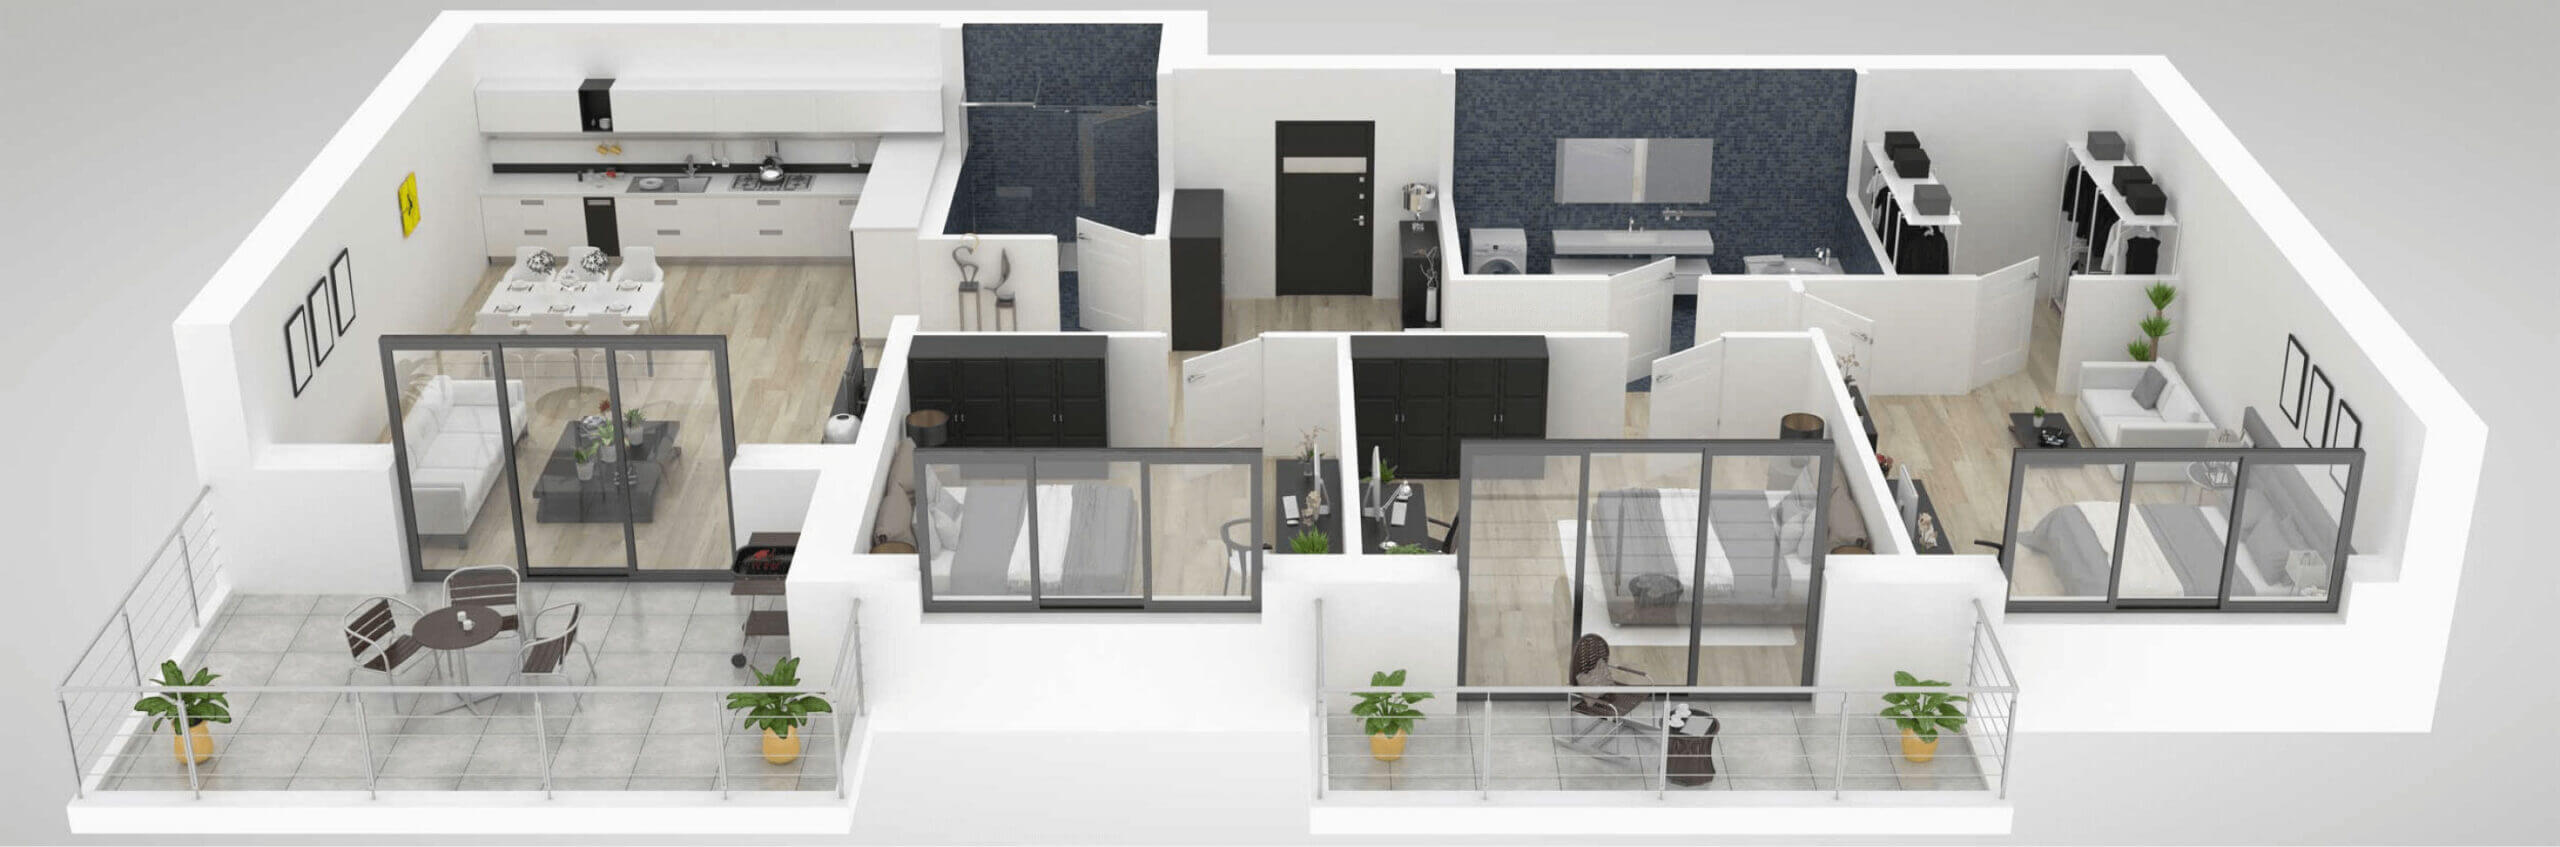 3D-Wohnungsmodell von oben